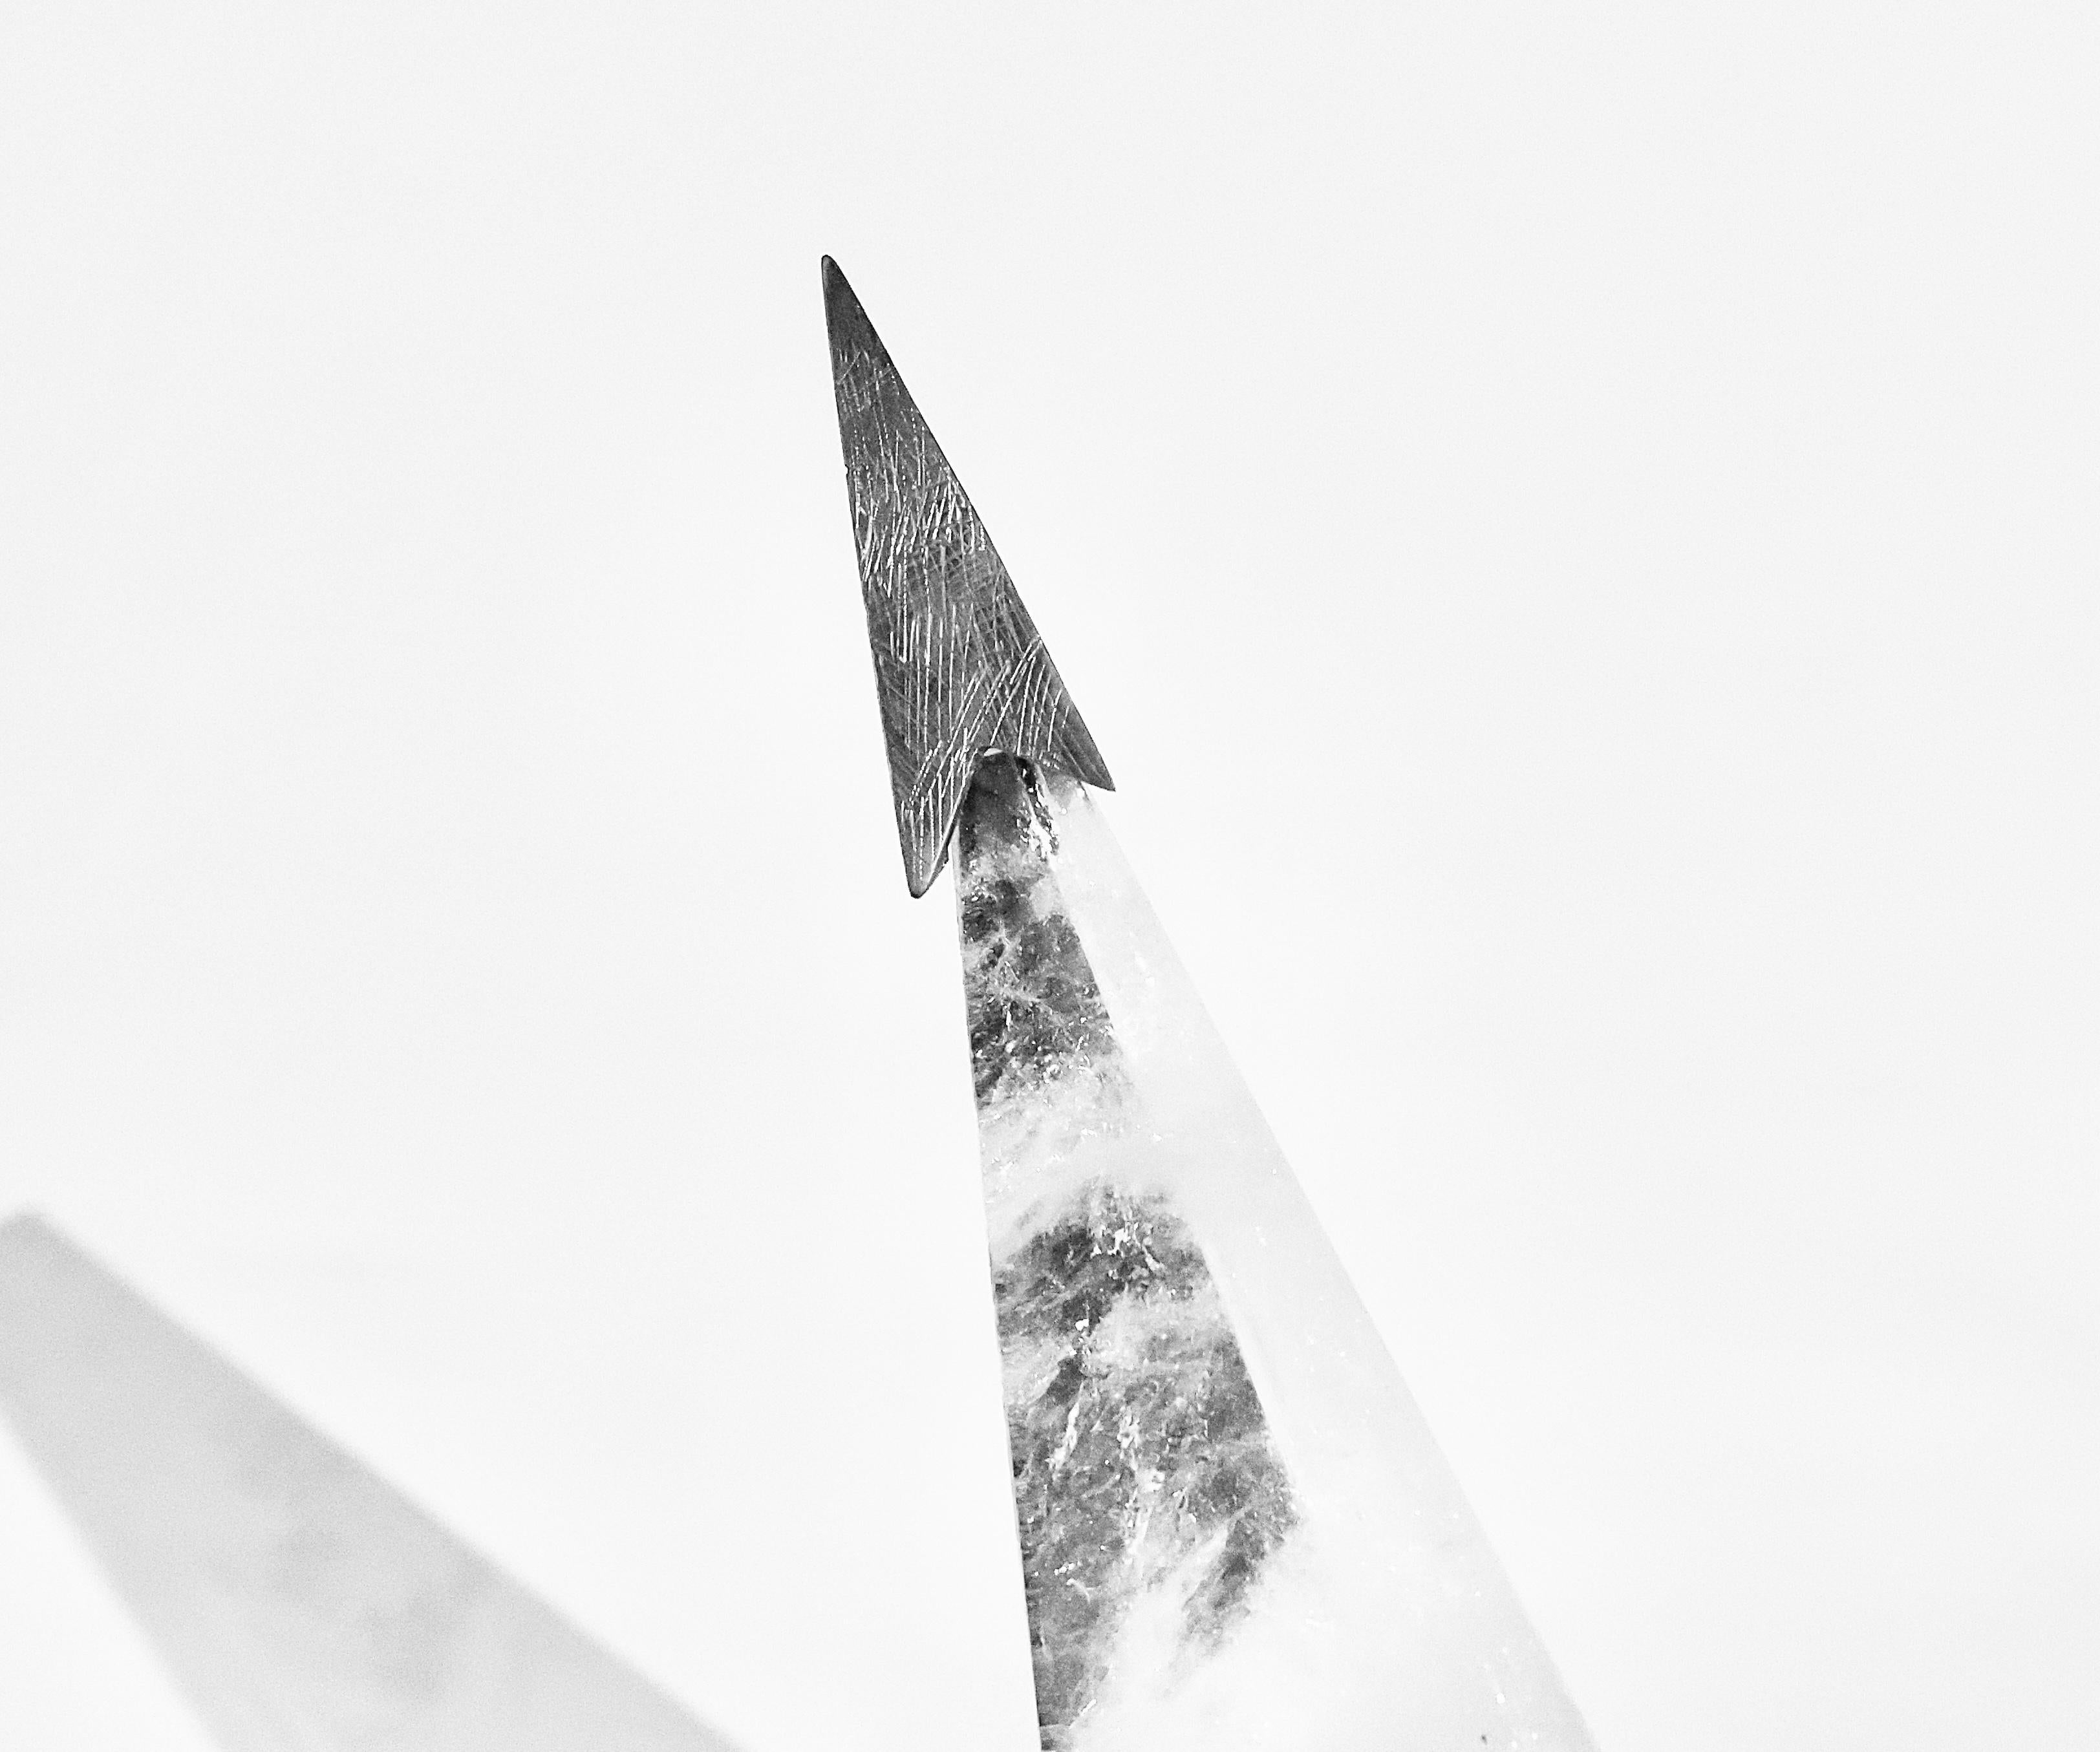 Fein geschnitzter sternförmiger Bergkristall-Kronleuchter mit vernickeltem Rahmen. Erstellt von Phoenix Gallery, NYC.
Der Kronleuchter ist 21,5